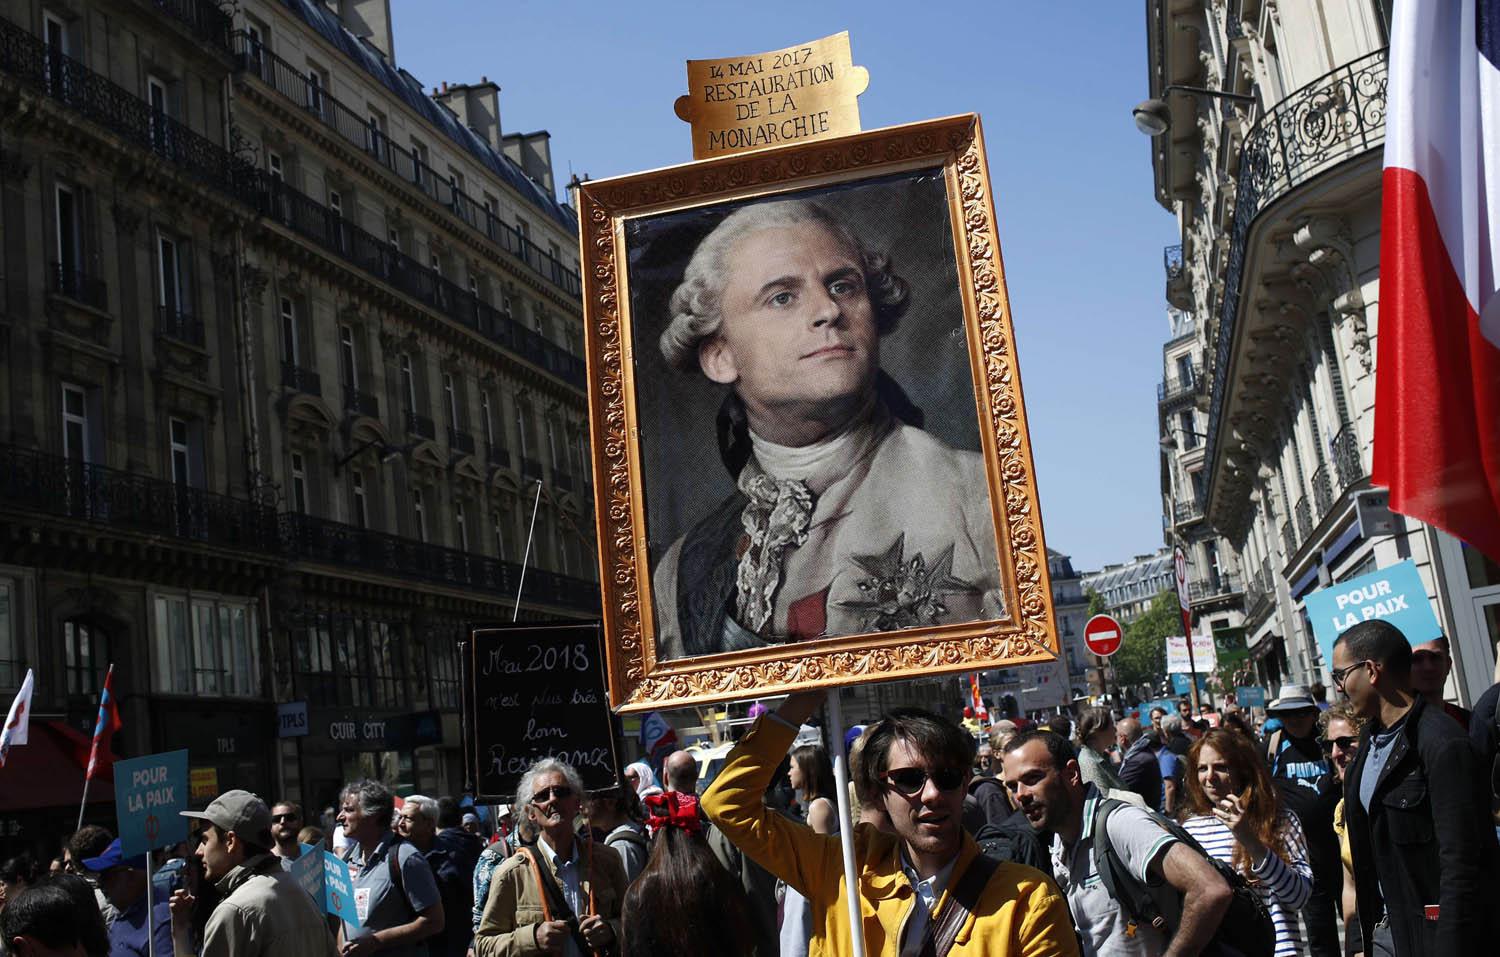 متظاهرون يرفعون صورة مركبة للرئيس إيمانويل ماكرون على لوحة لملك فرنسا لويس السادس عشر